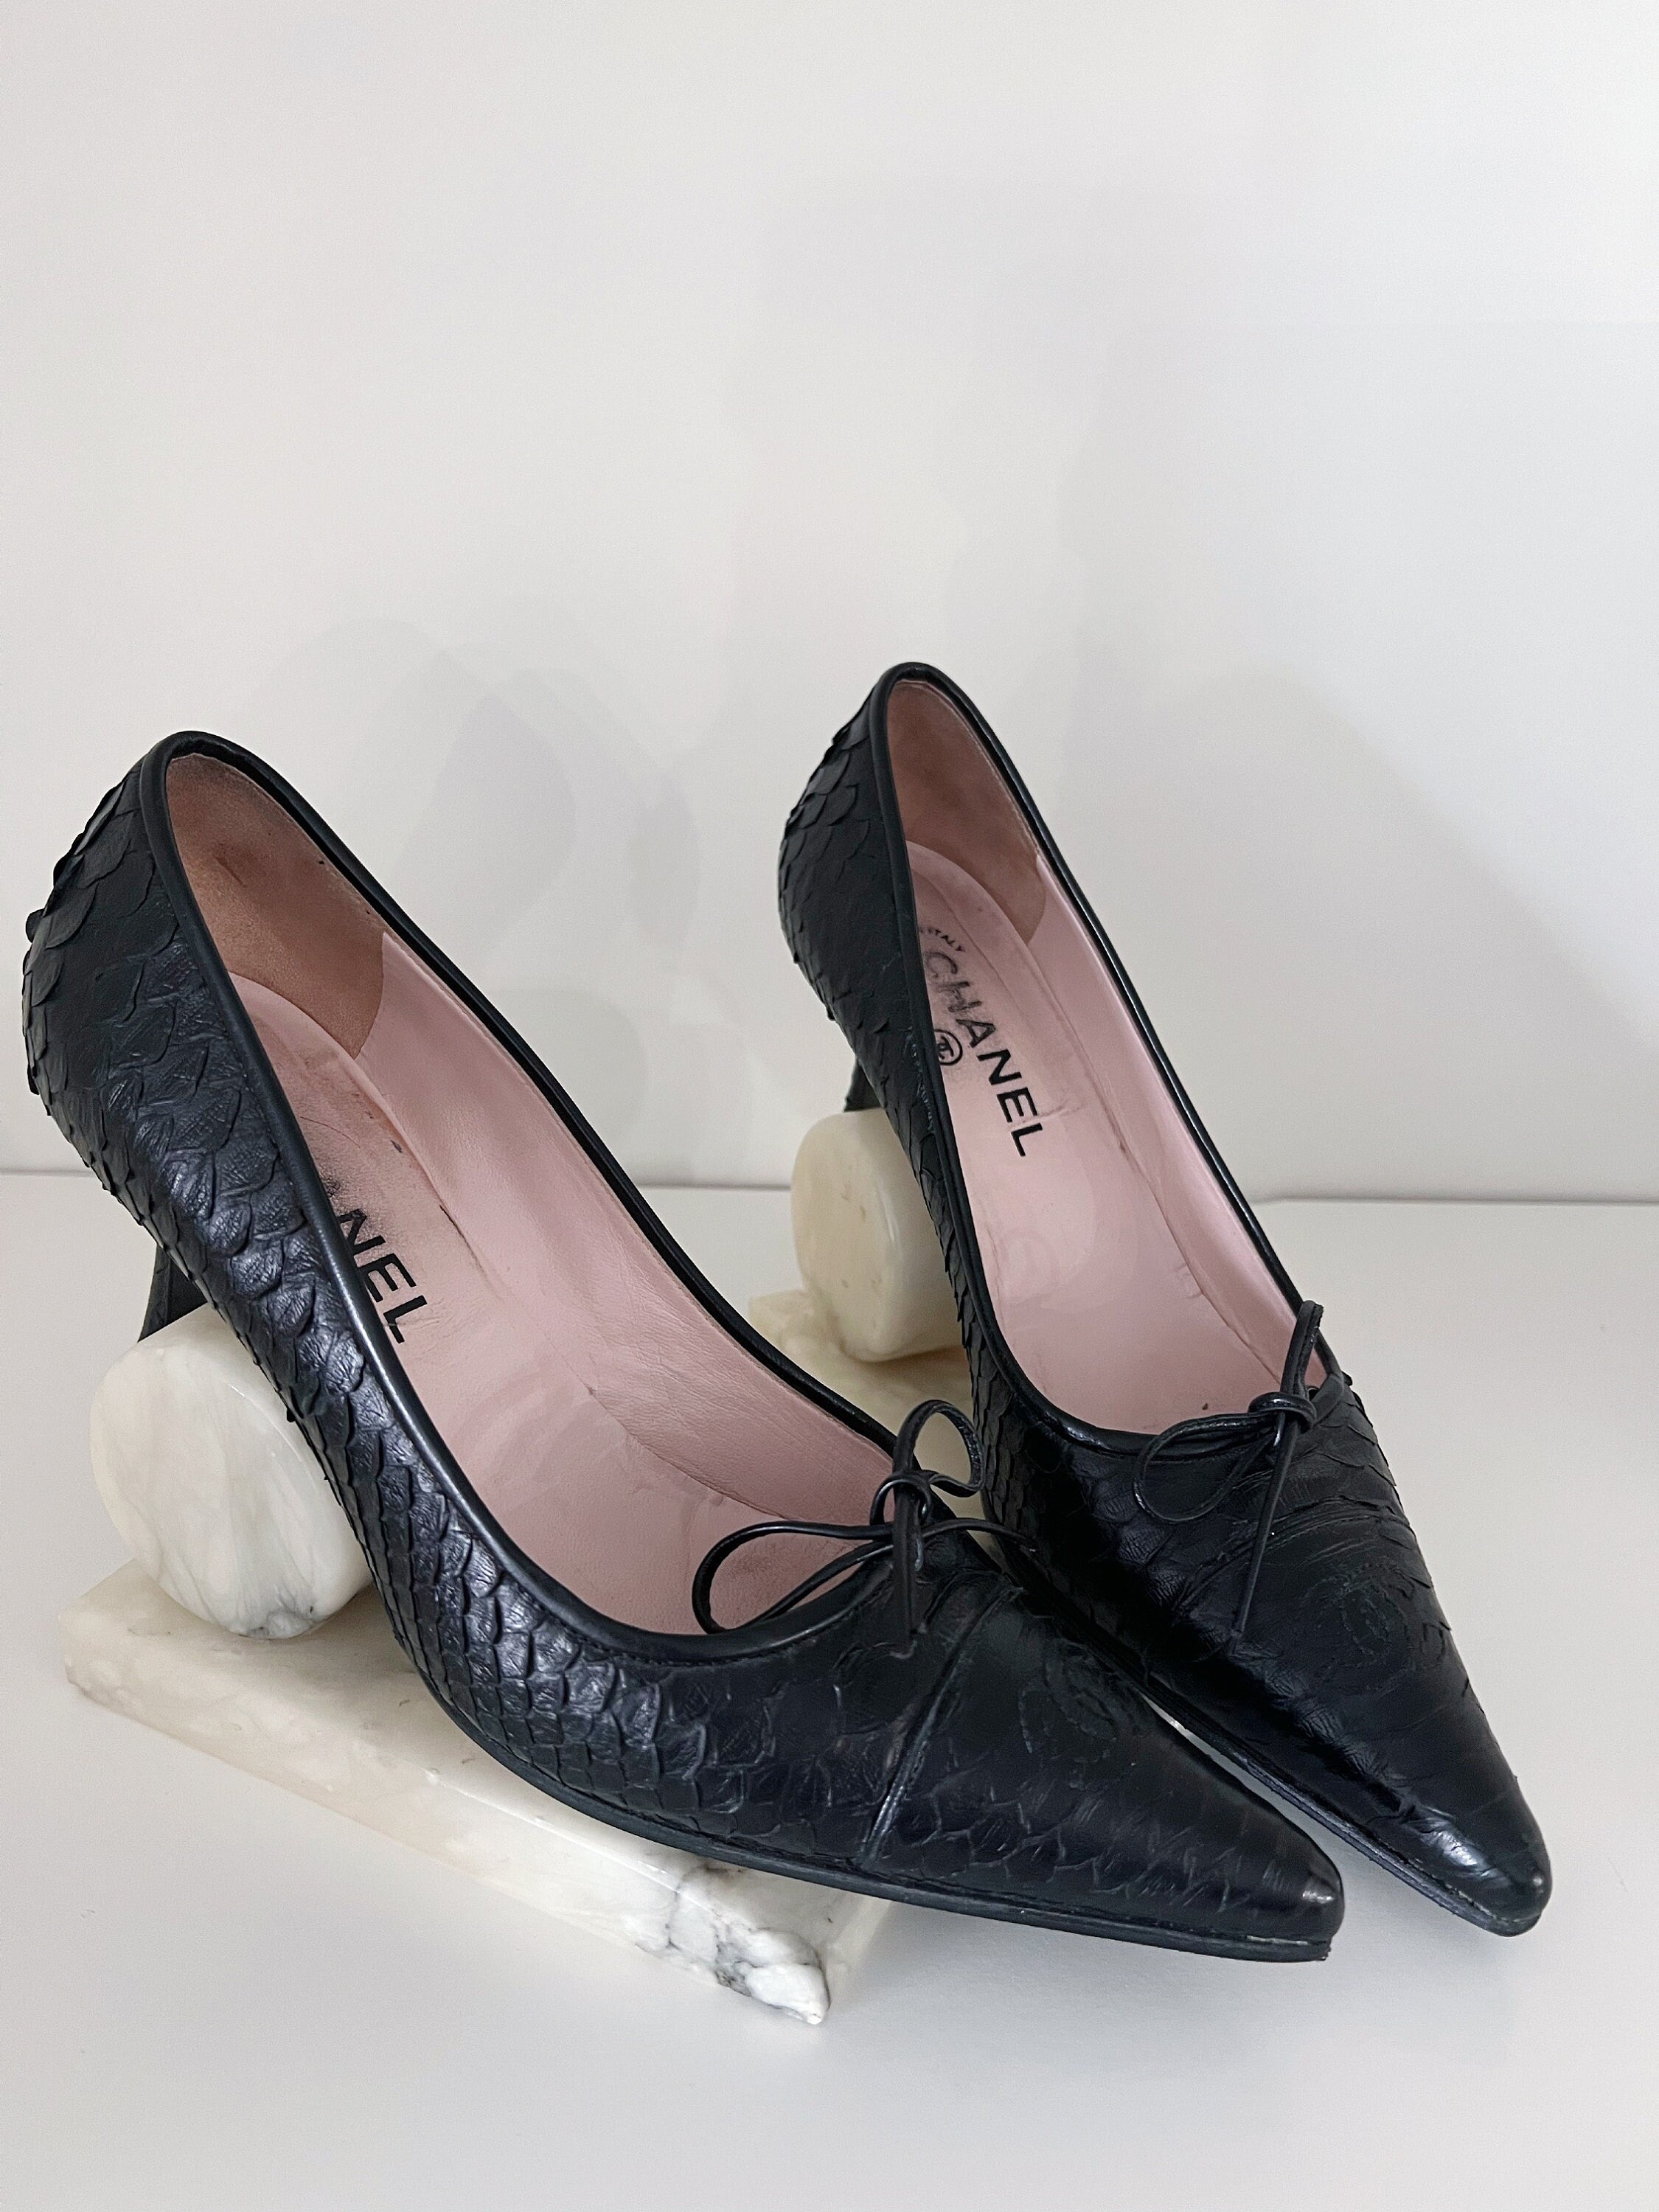 Vintage Ladies Chanel Shoes Size 39